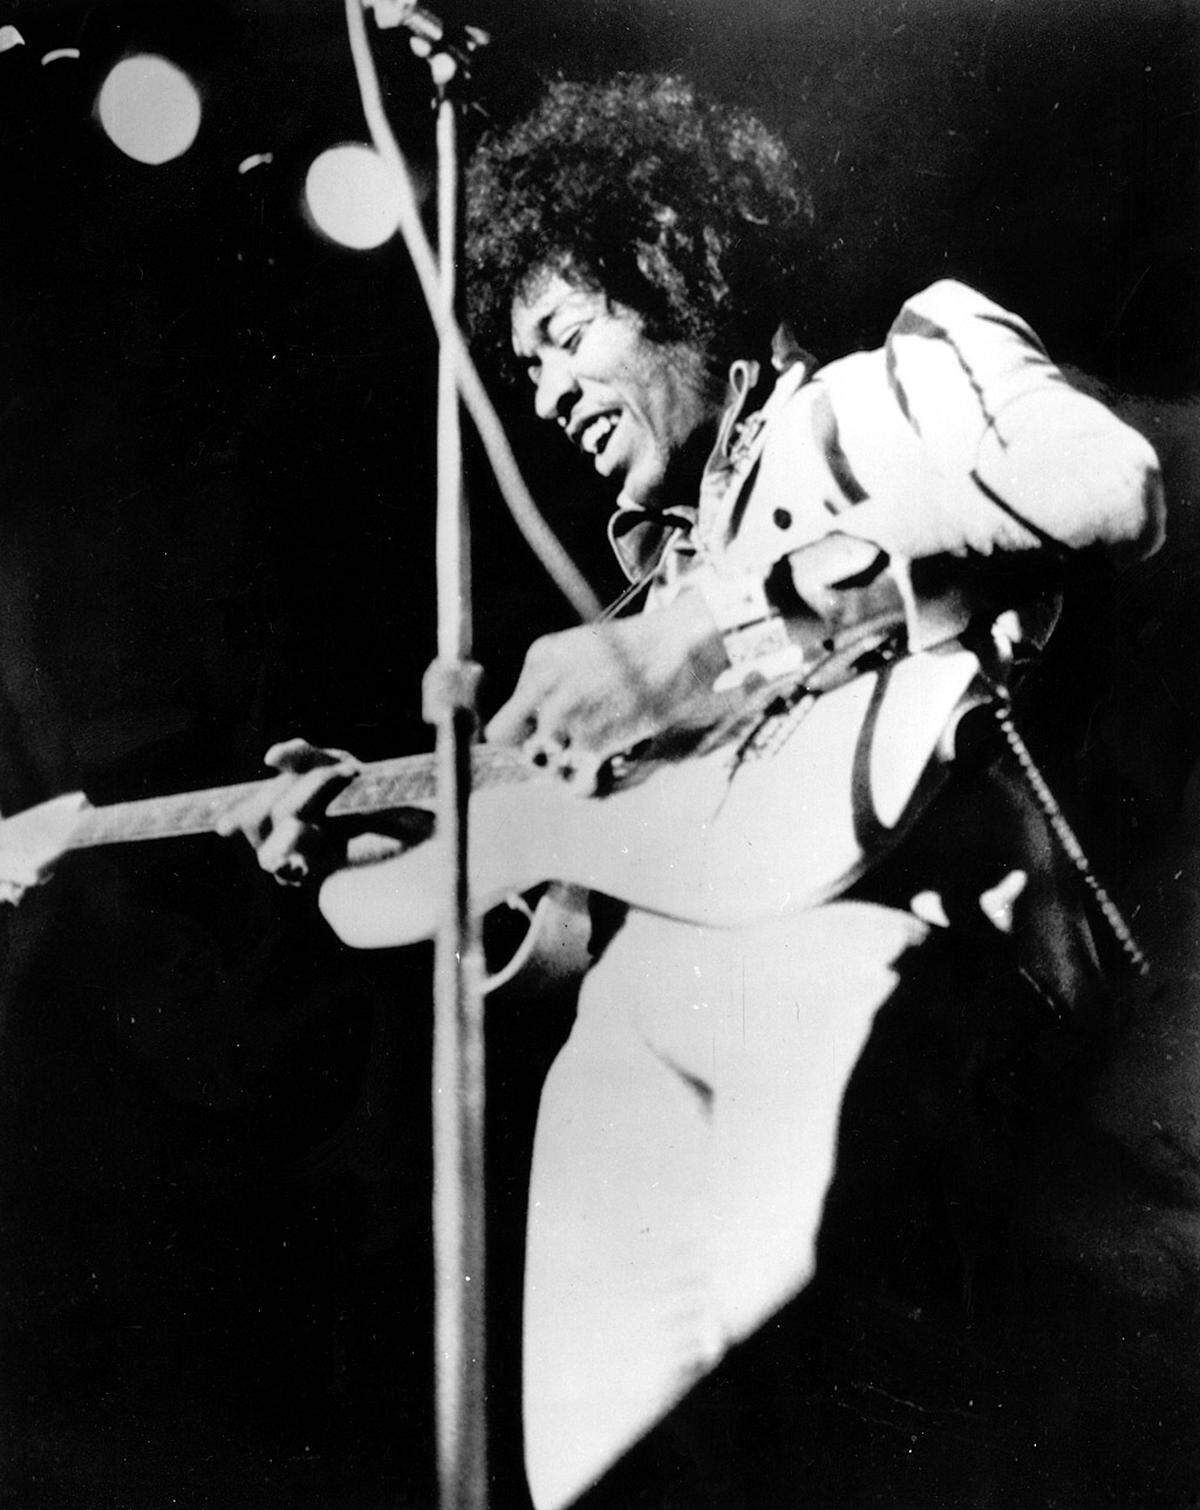 "Ihr habt eine Menge cooler Bands in England, aber ihre Sounds klingen großteils einfach zu clean", sagte Jimi Hendrix einmal. "Man kann nicht erwarten, dass ein tiefes Gefühl aus Musik herauskommt, bei der die Arrangements auf Papier aufgeschrieben sind. Ich fühle alles, was ich spiele - es muss in einem drin stecken."